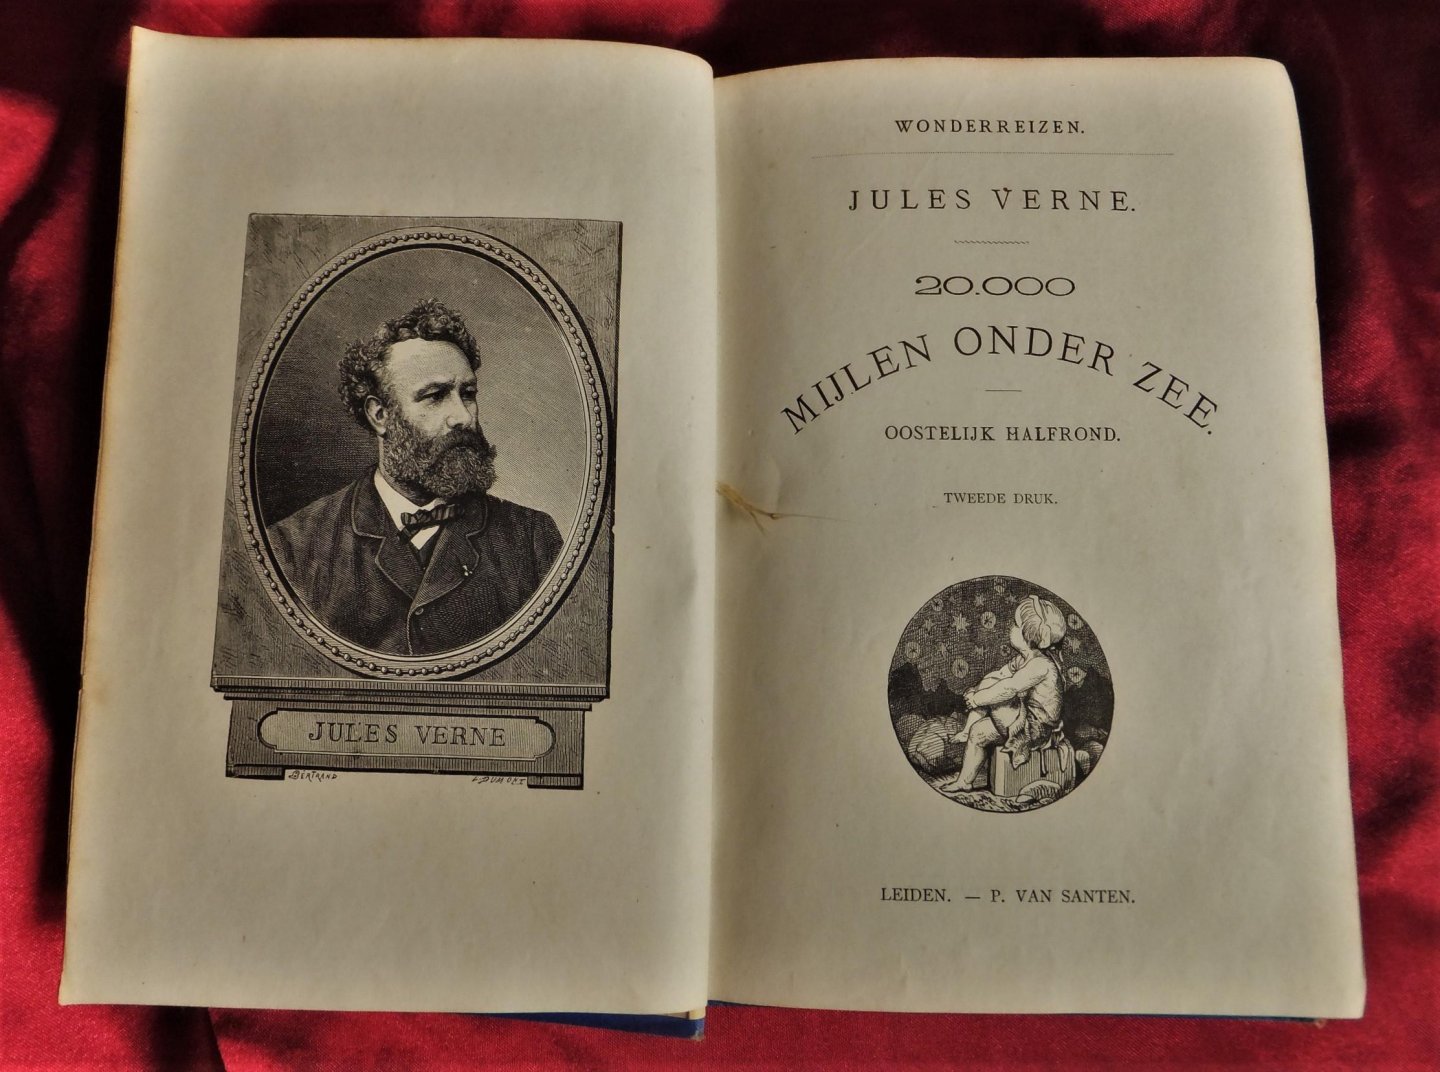 Verne, Jules - Wonderreizen: 20.000 mijlen onder zee - Oostelijk halfrond